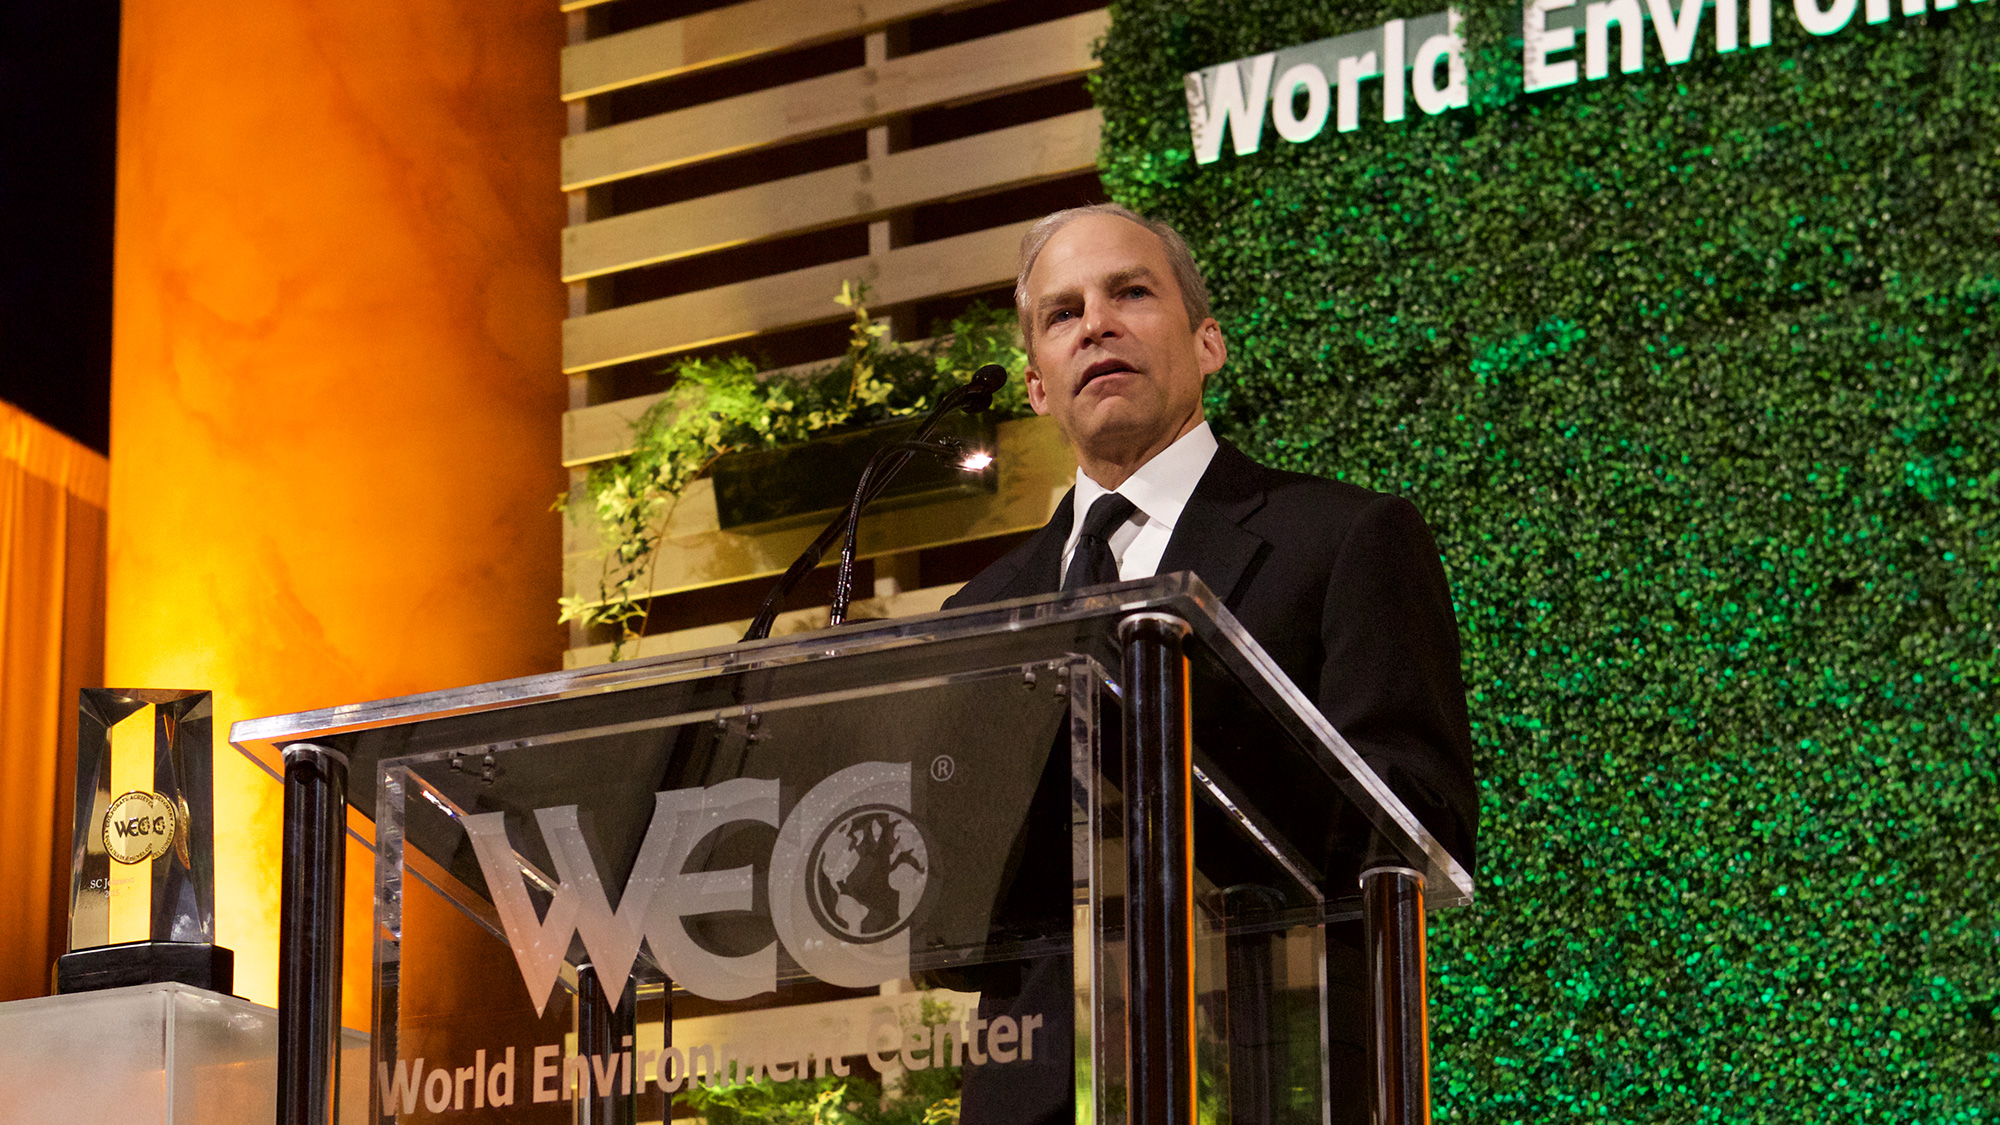 H Fisk Johnson aceita a medalha de ouro em 2015 do World Environment Center por realizações de desenvolvimento sustentável